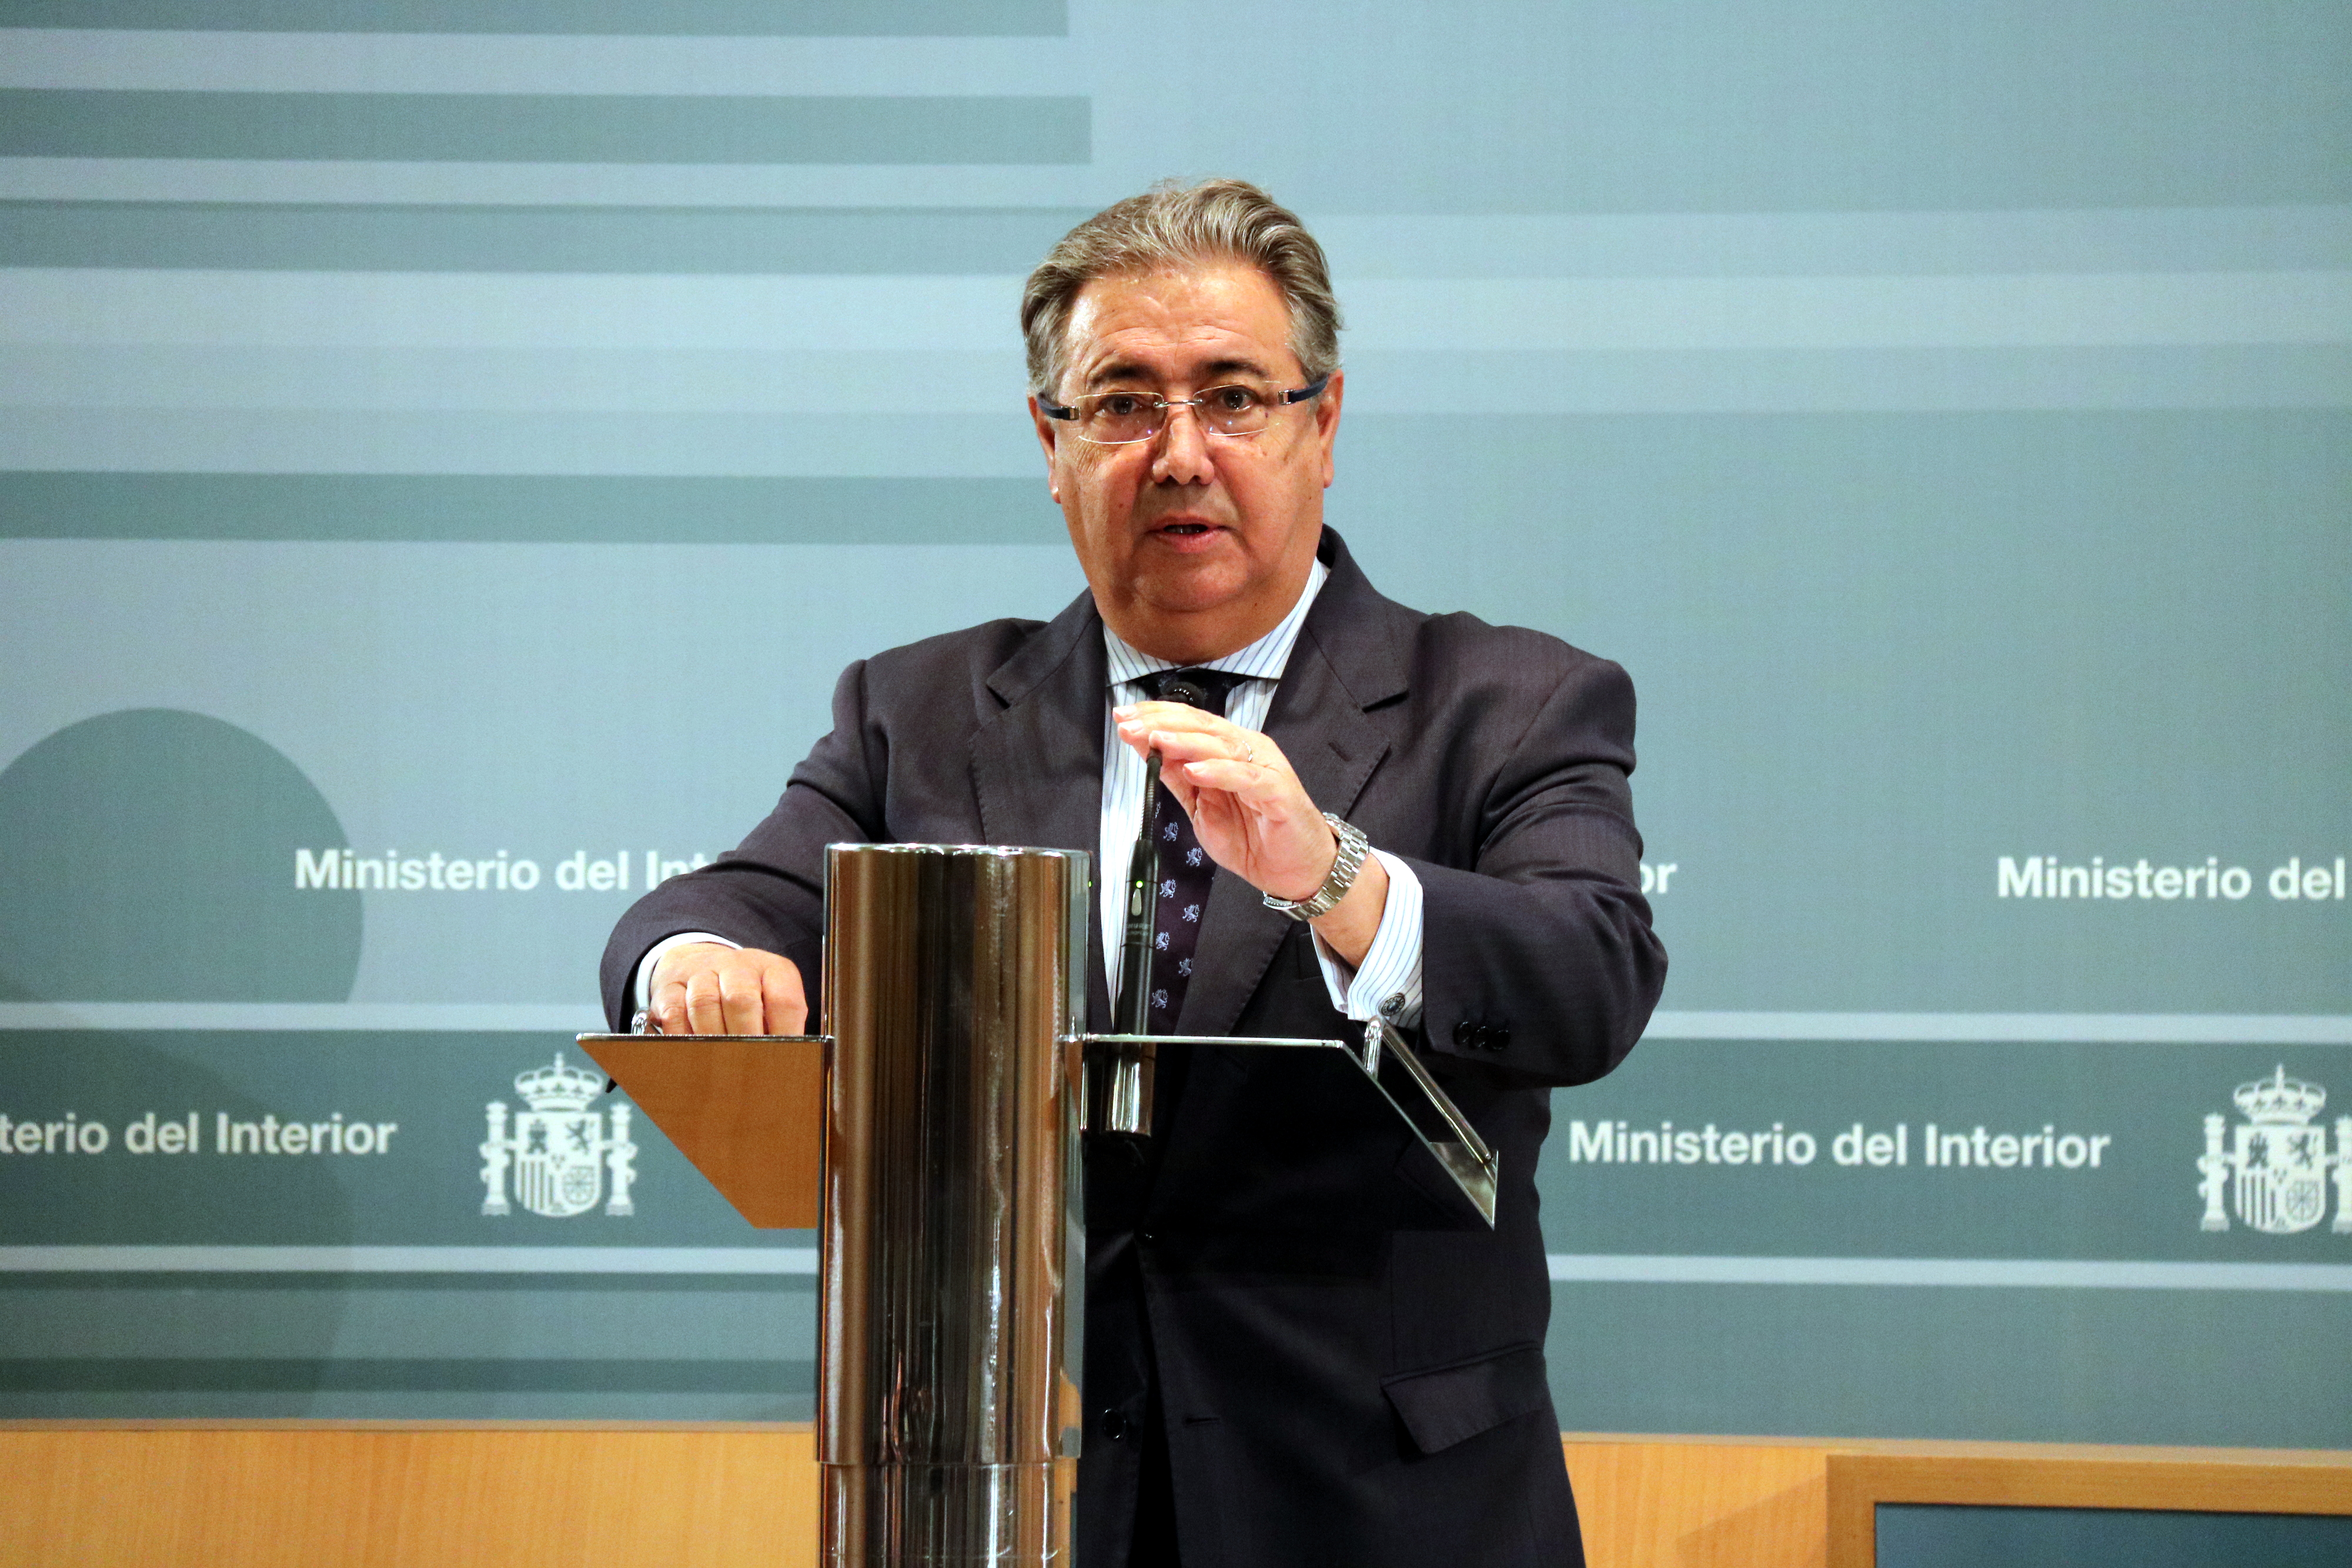 The Spanish Home Affairs minister Juan Ignacio Zoido (by Roger Pi de Cabanyes)